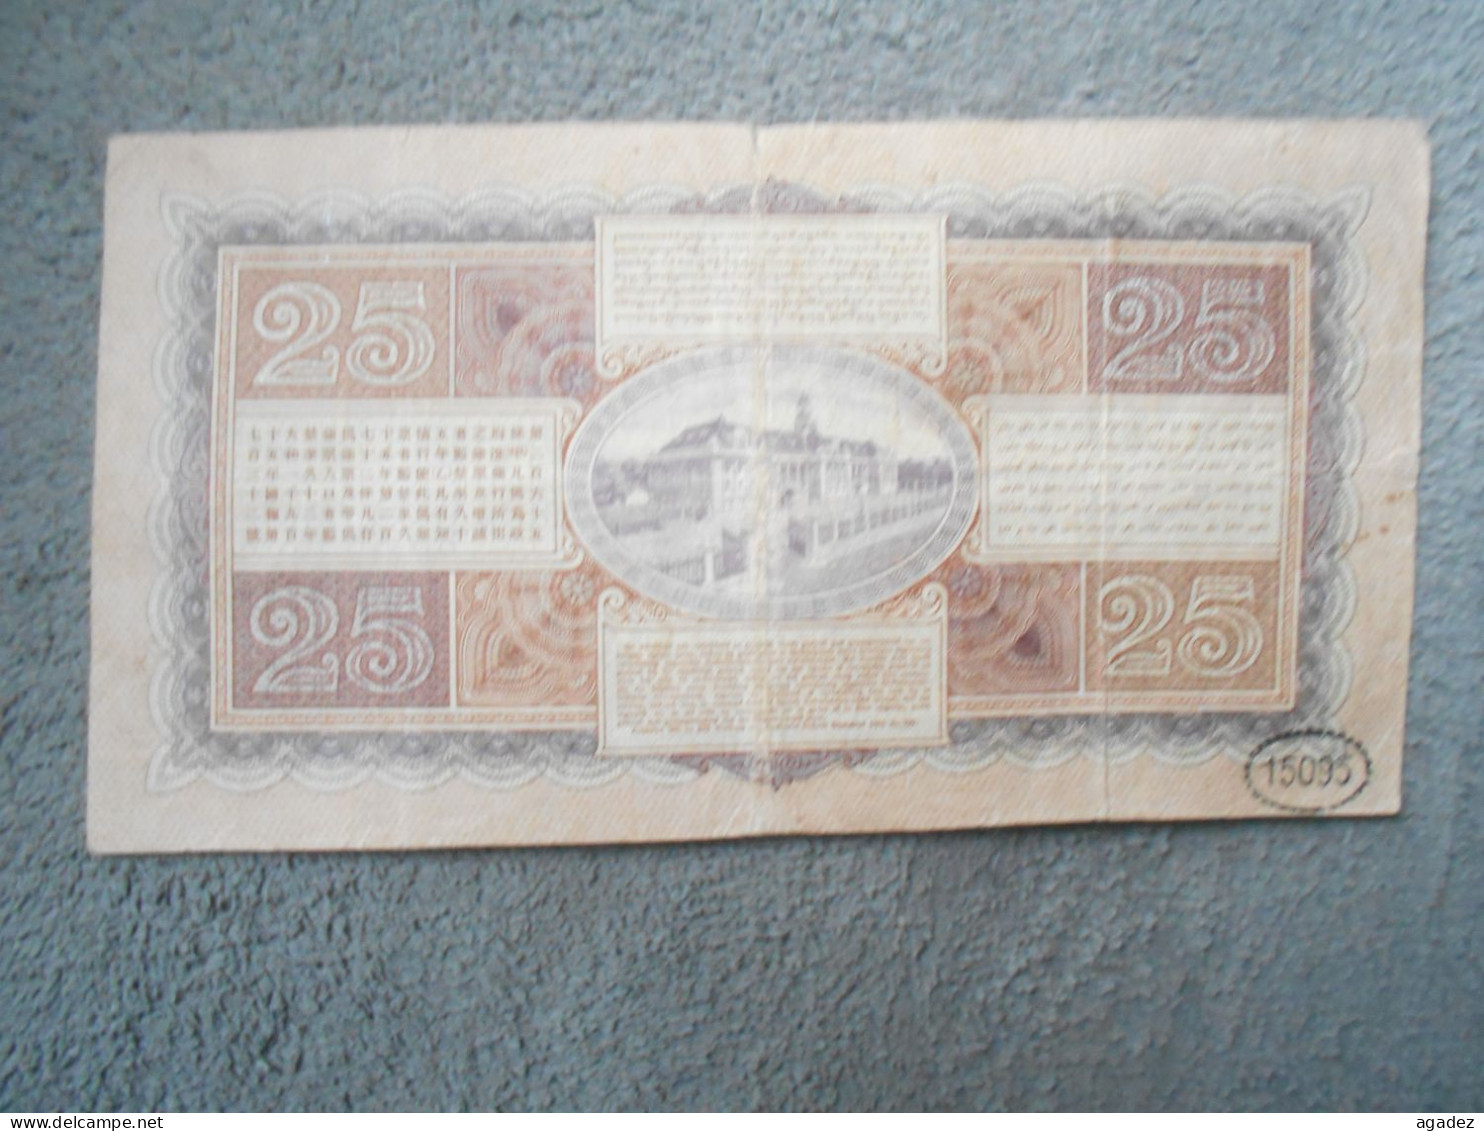 Ancien Billet De Banque Java De Javasche Bank 25 Gulden 1929 - Other - Asia